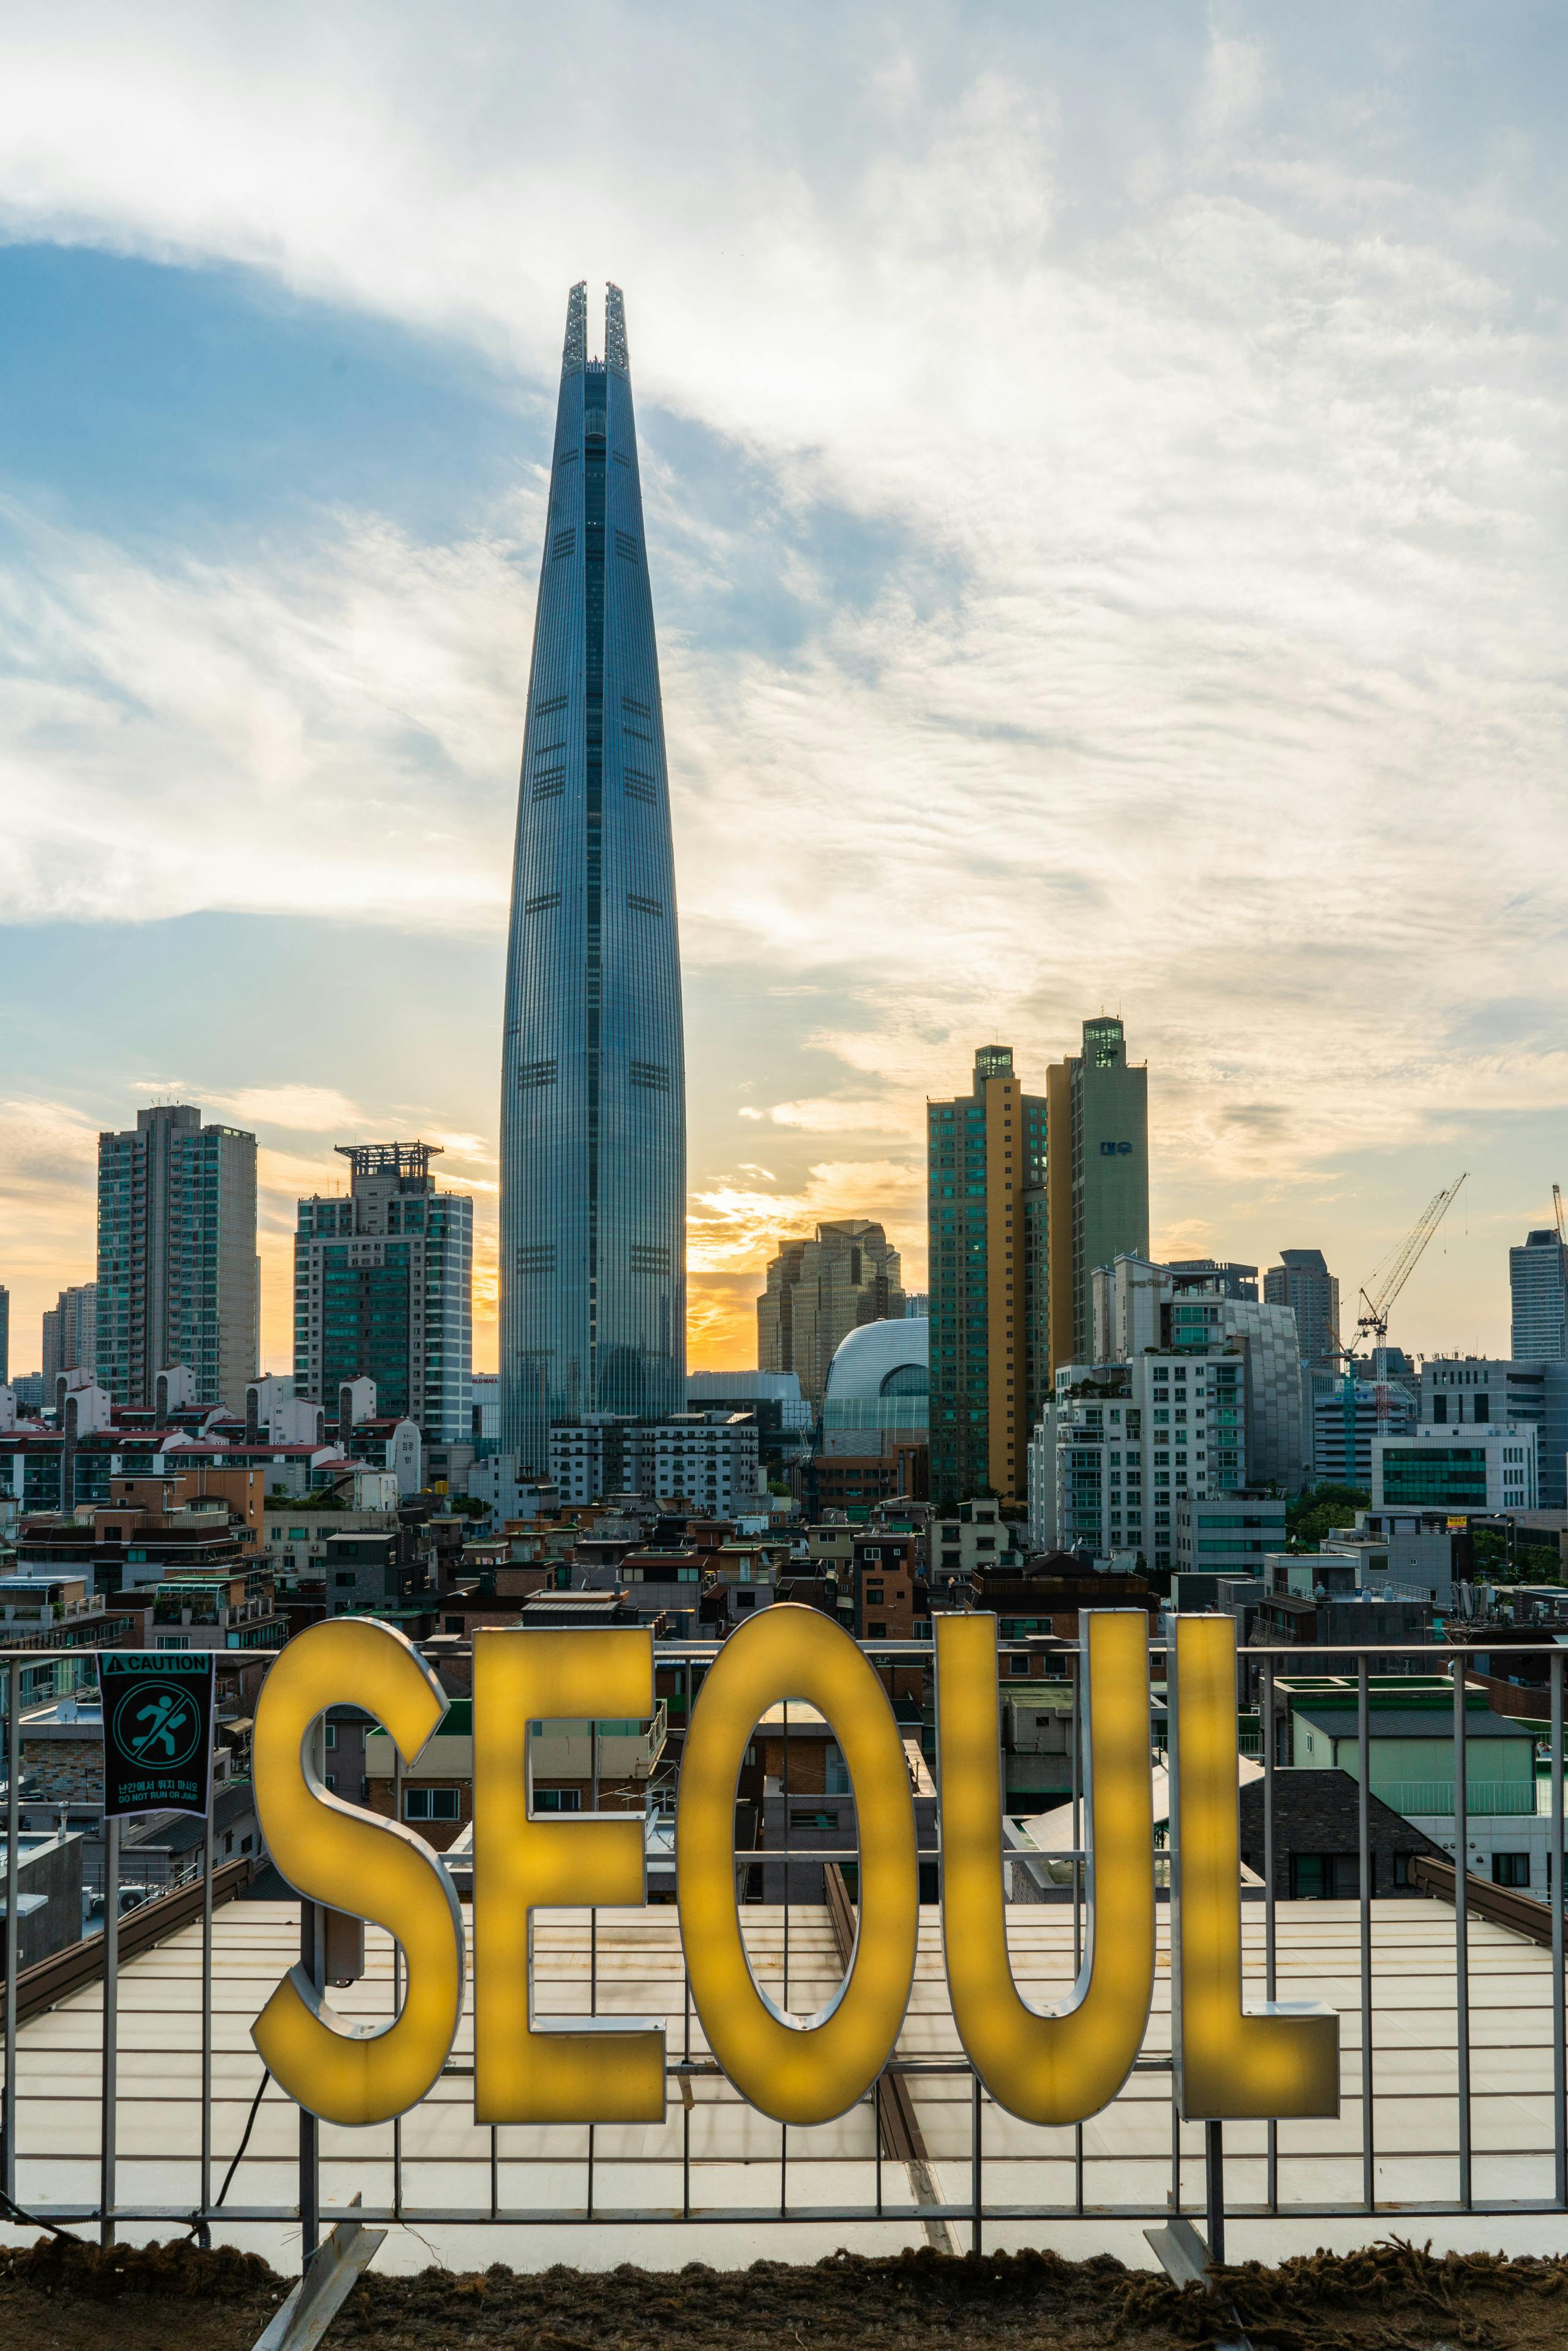 Seoul Signage · Free Stock Photo